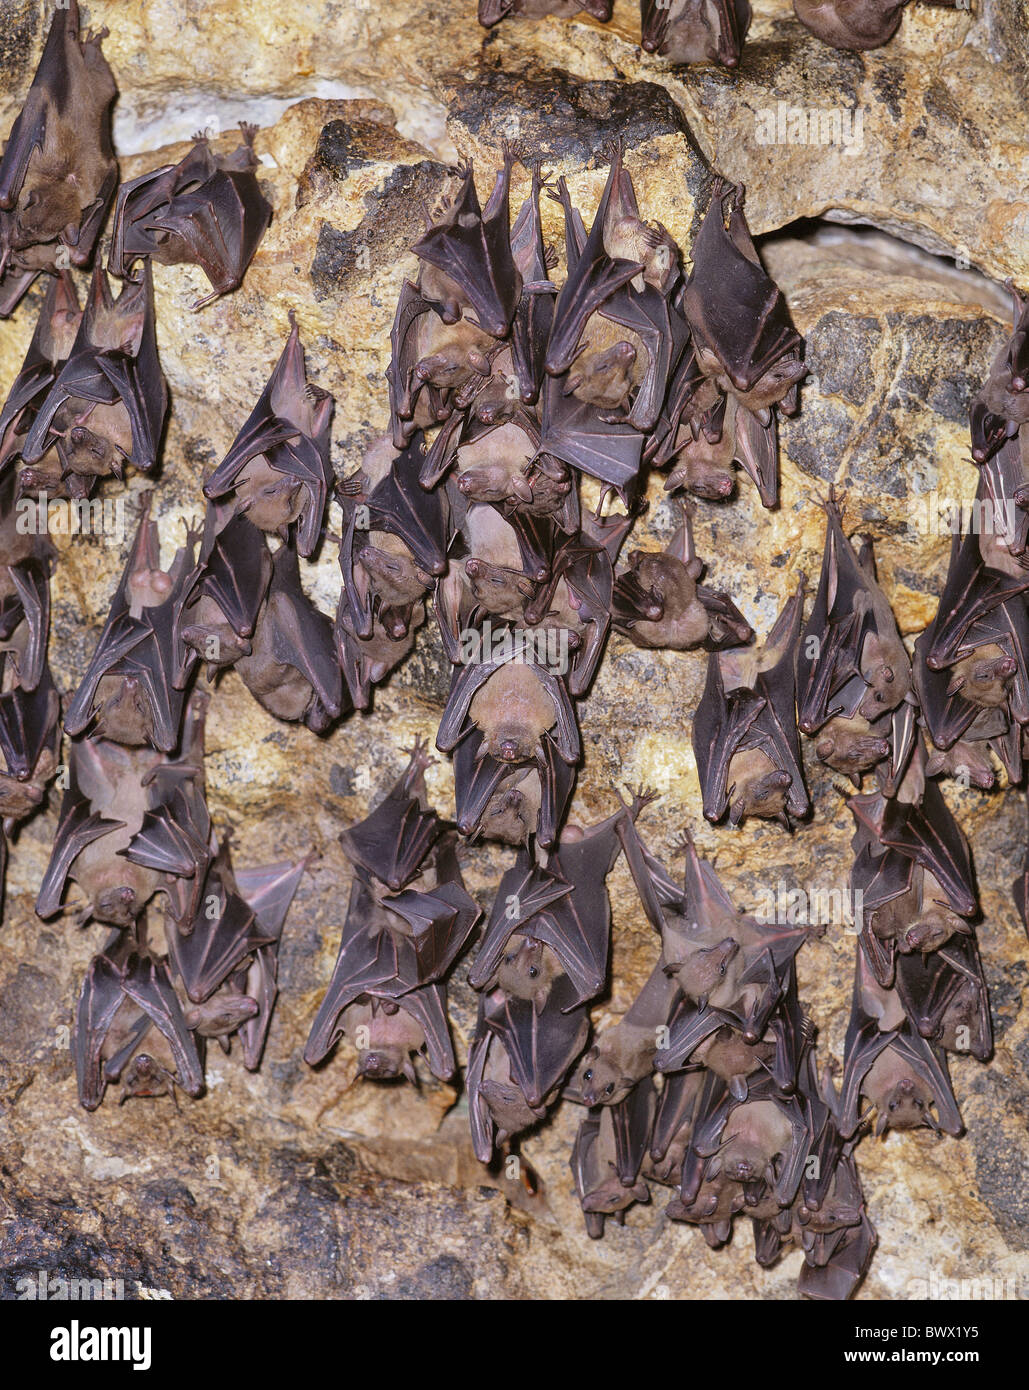 Grotte des chauves-souris à l'intérieur de l'essaim rêve hang mur falaise Asie Bali bat Banque D'Images